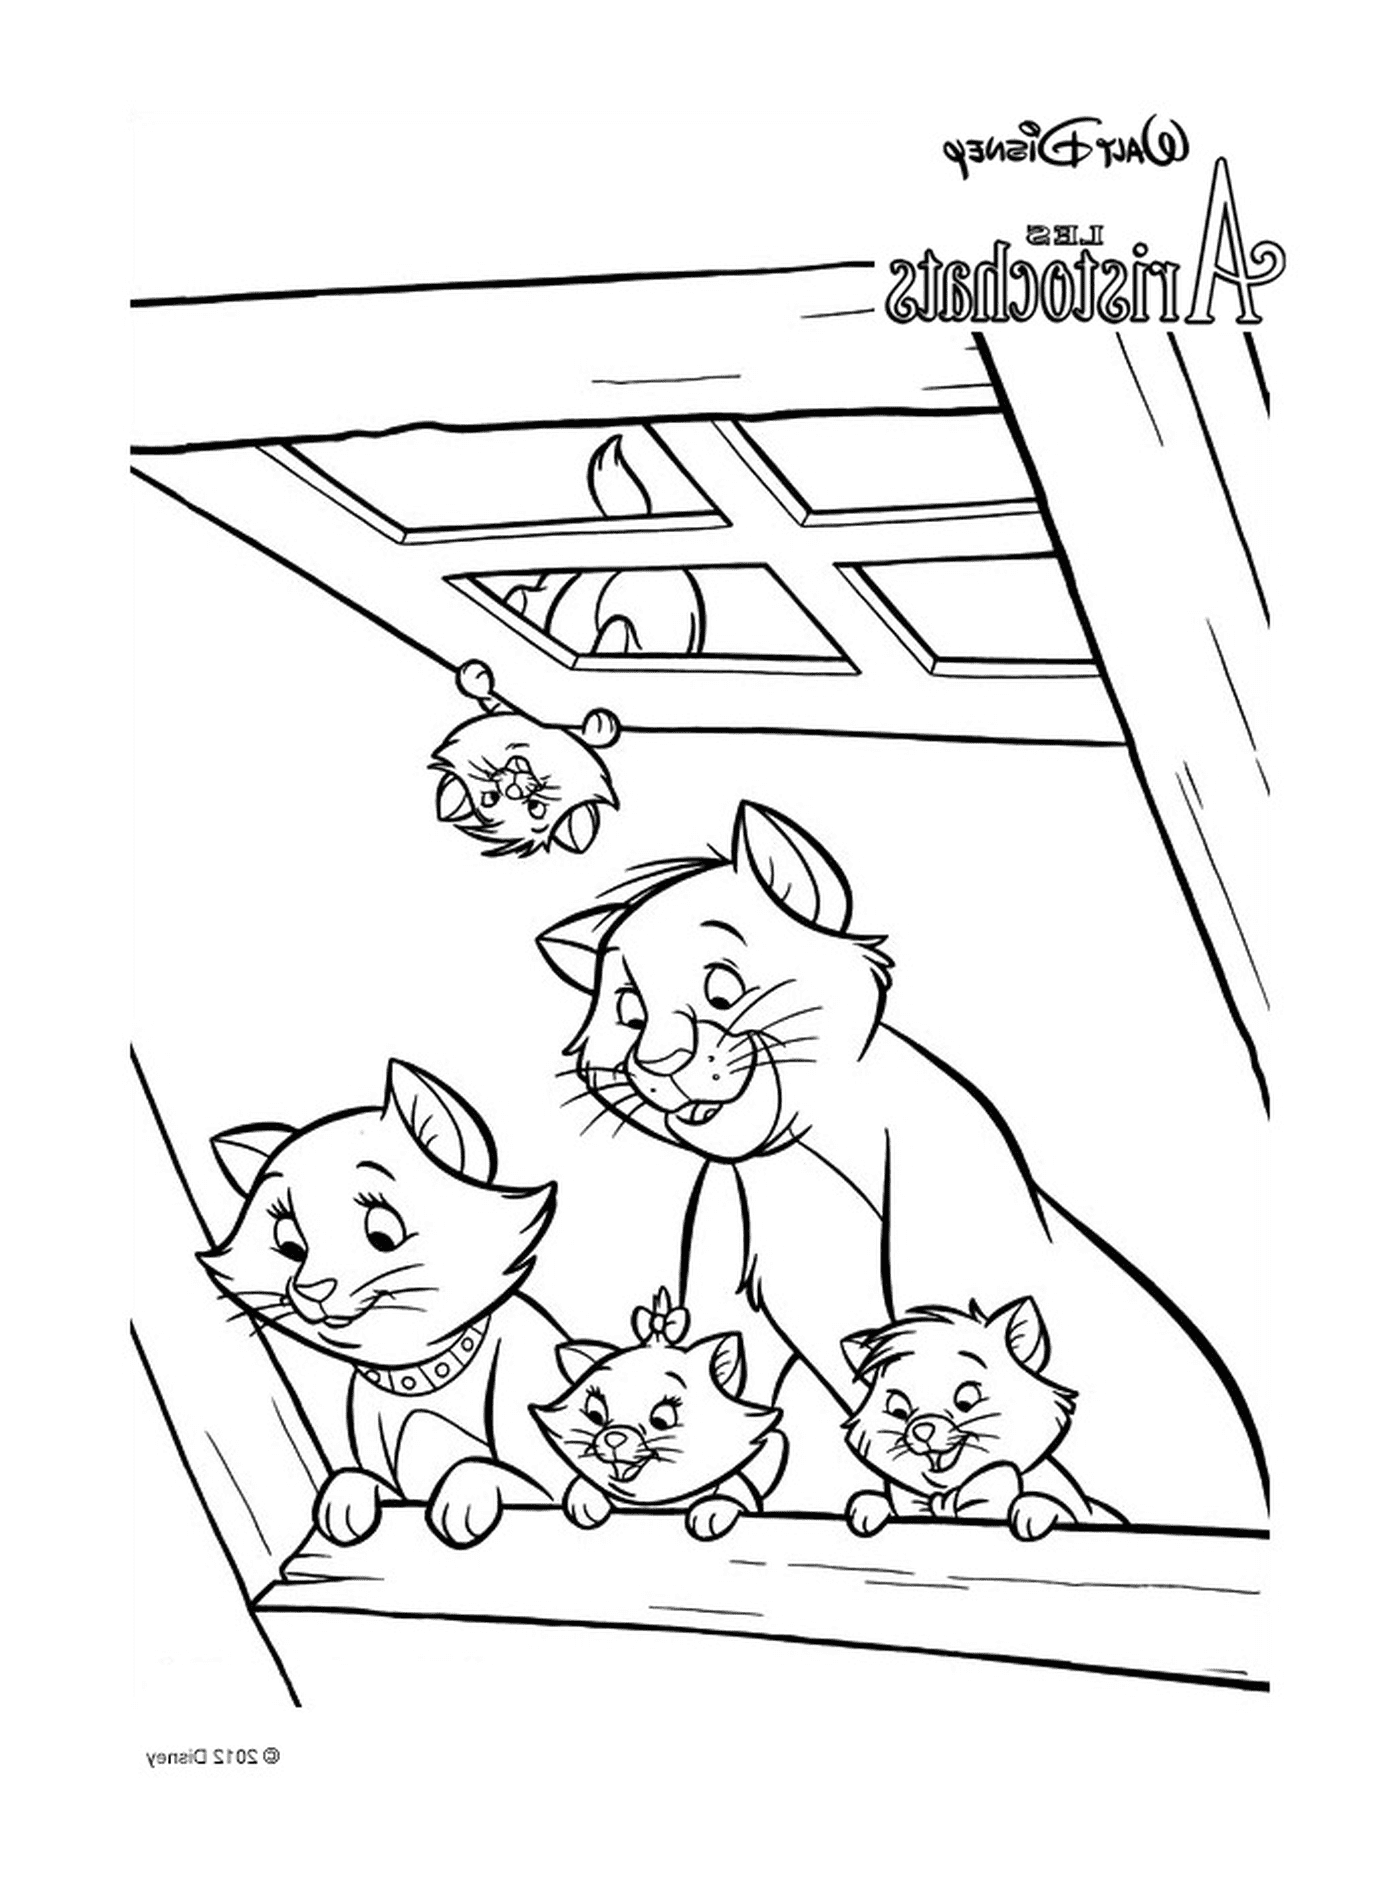  Группа кошек, сидящих на крыше здания 